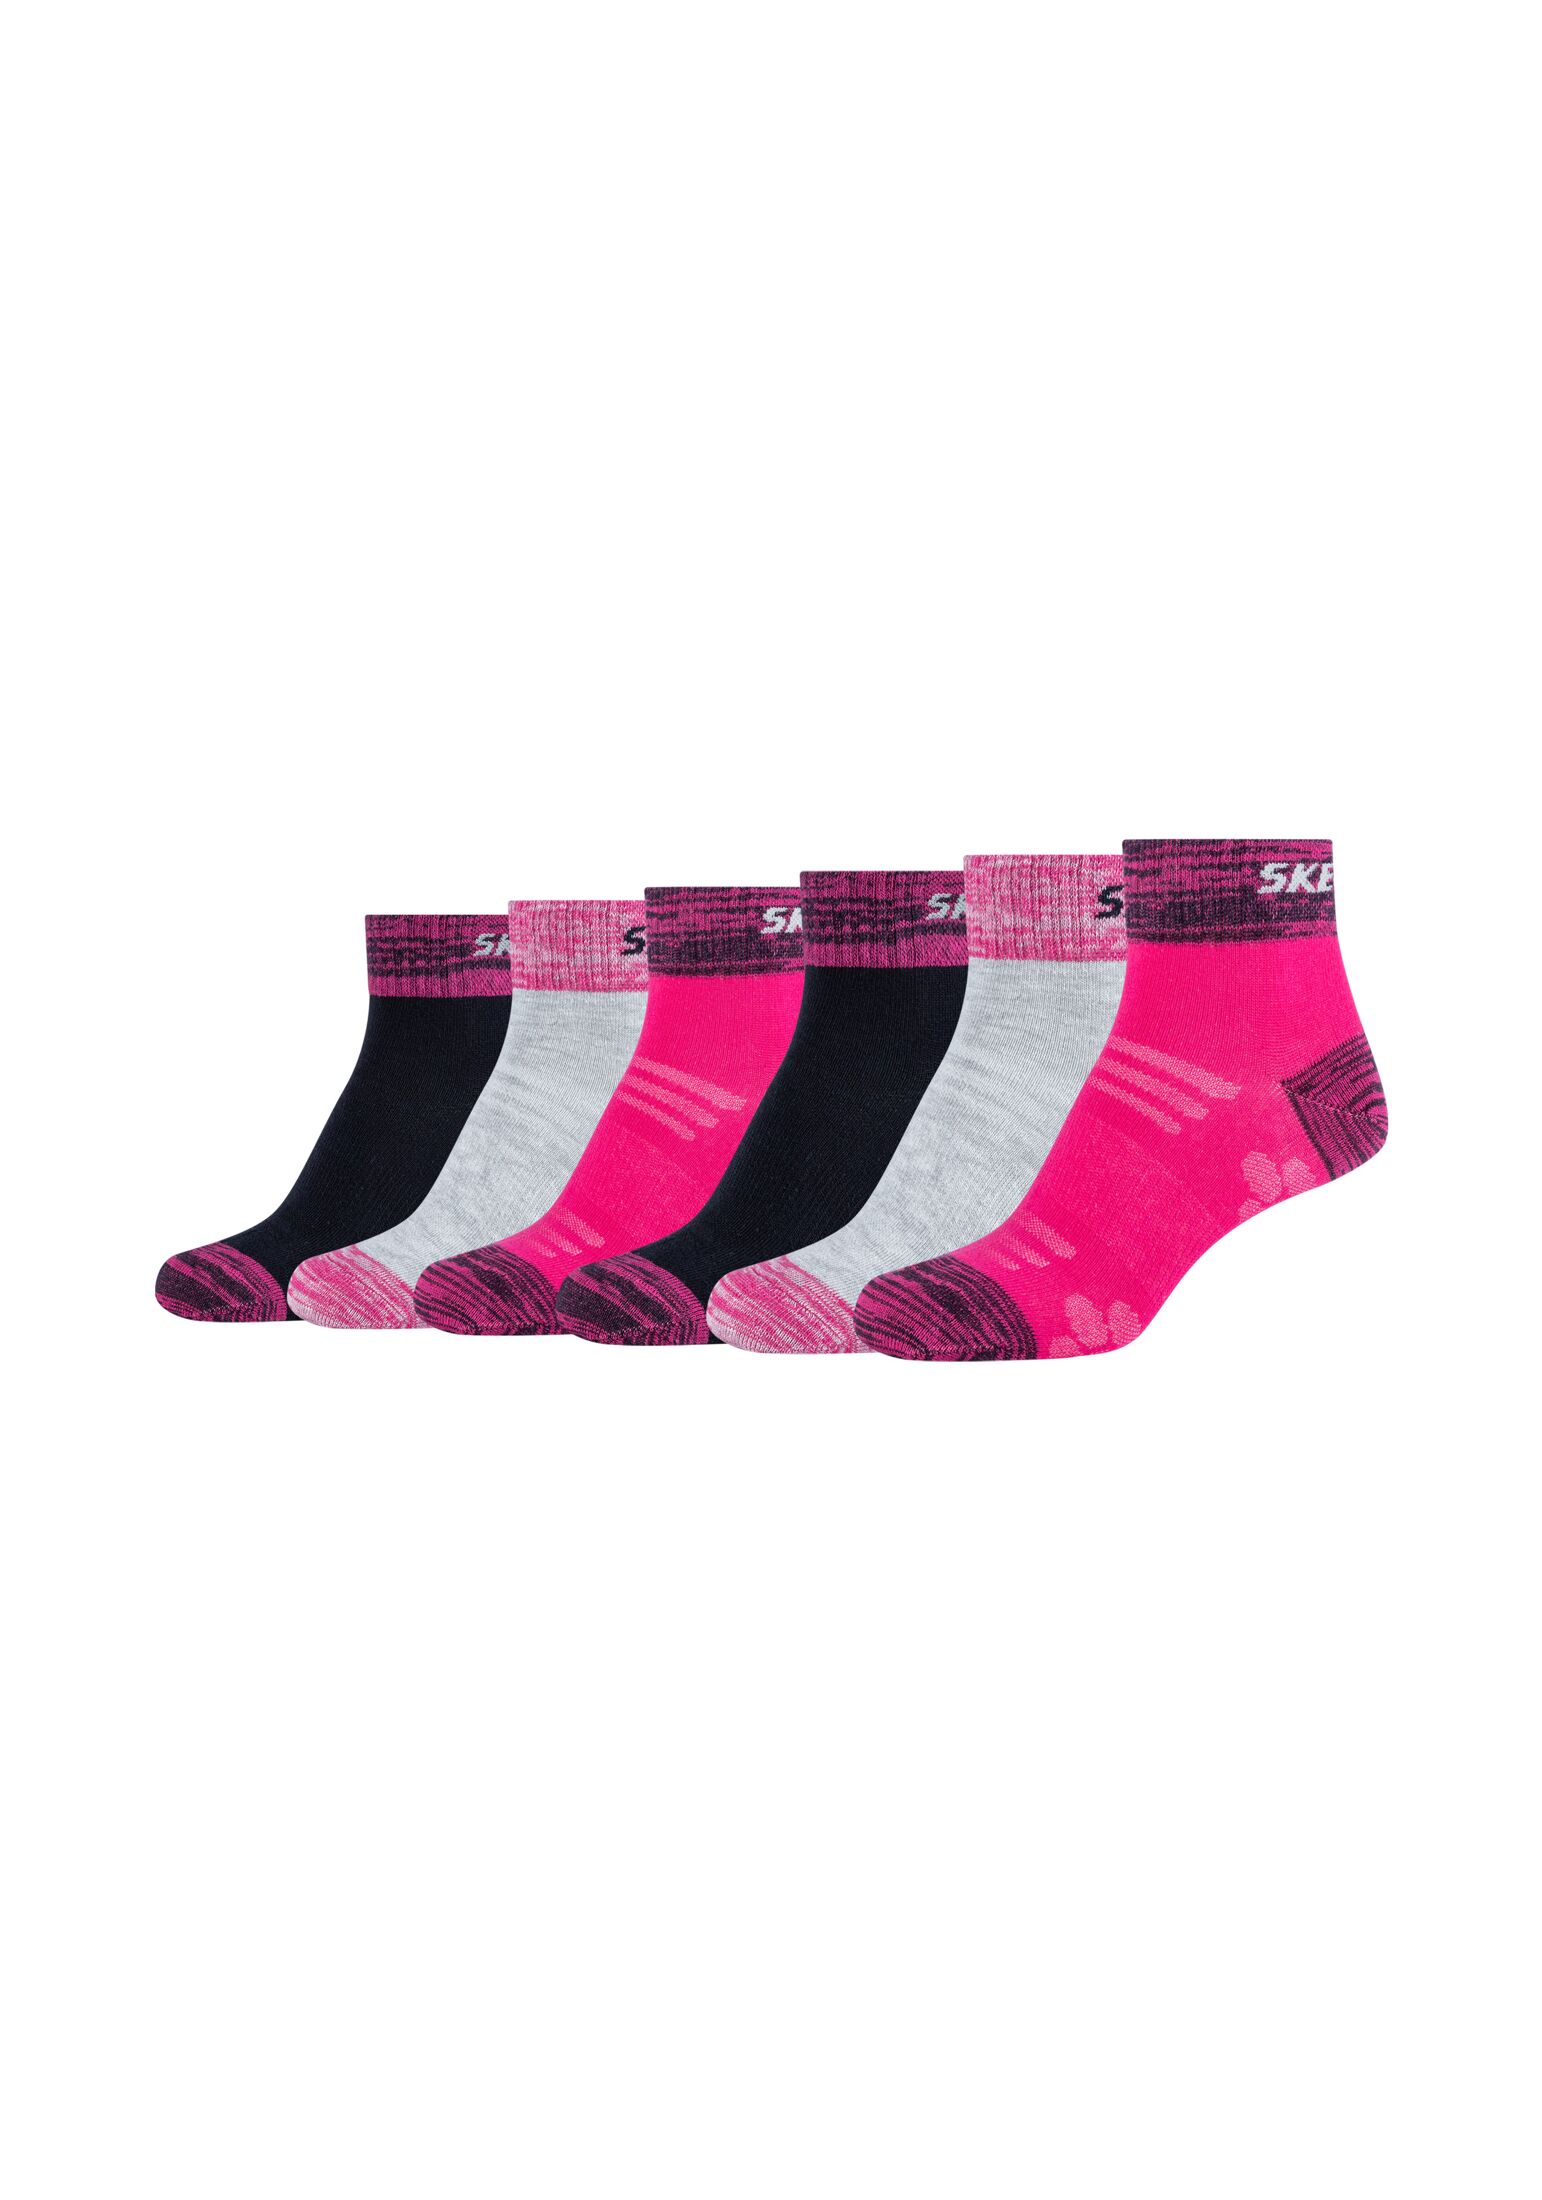 Носки Skechers 6 шт mesh ventilation, цвет pink glow носки skechers sneaker 6 шт mesh ventilation цвет pink glow mix